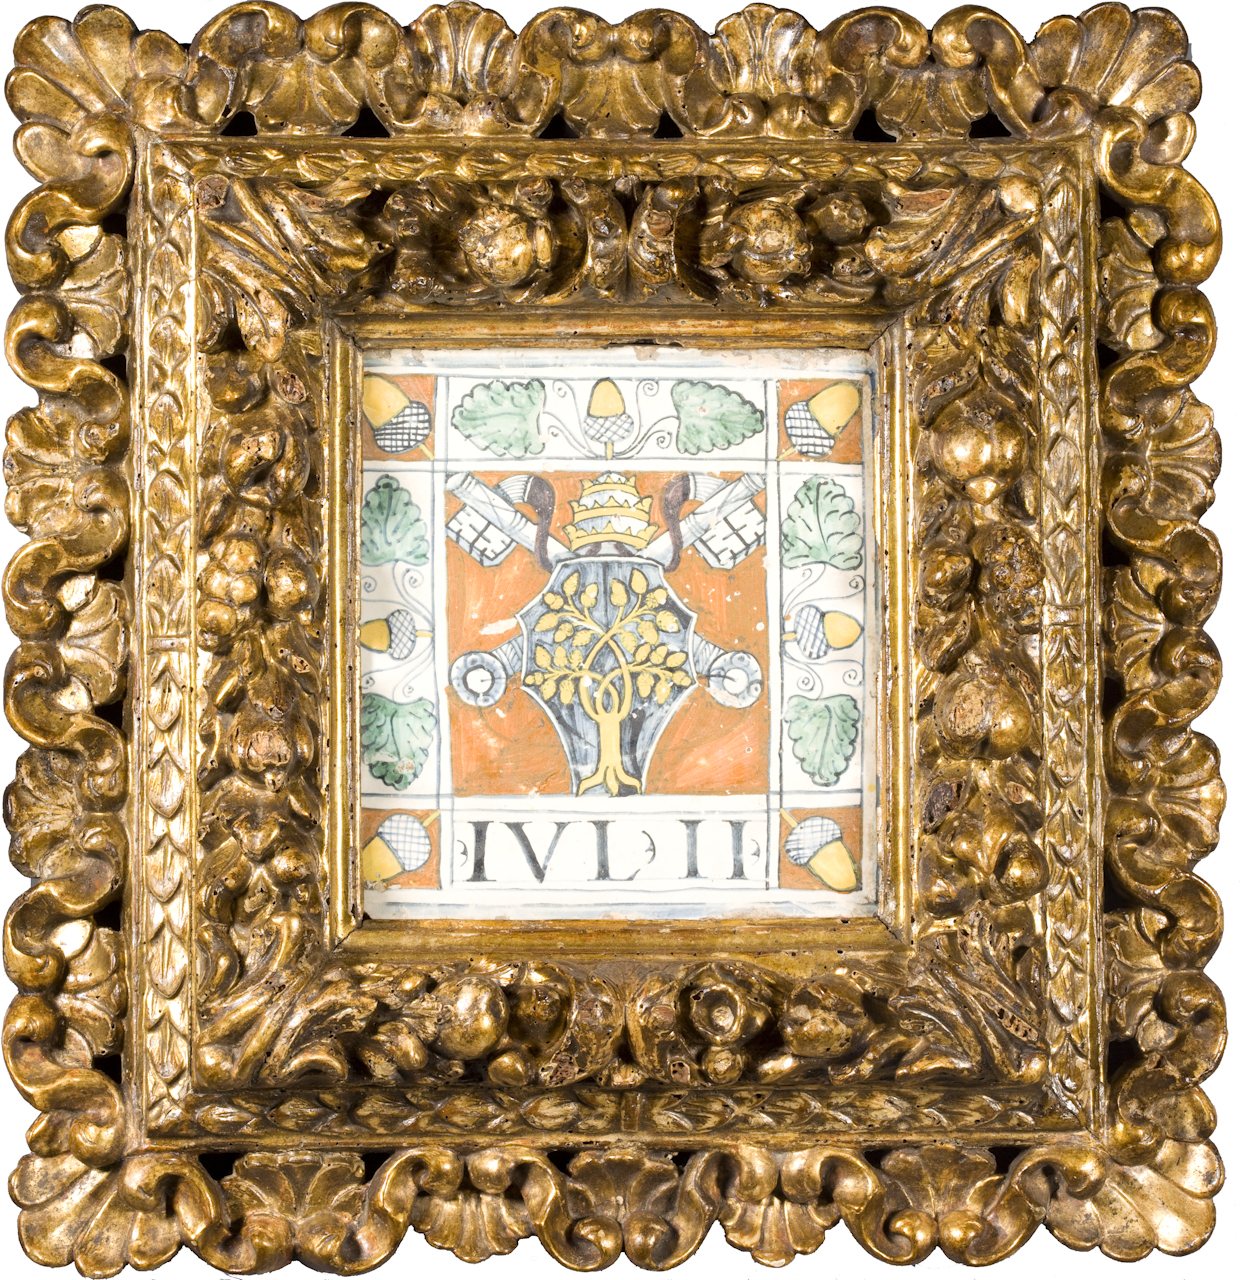 stemma papale di Giulio II Della Rovere, ghiande e foglie di quercia (mattonella) - manifattura di Deruta (inizio sec. XVI)